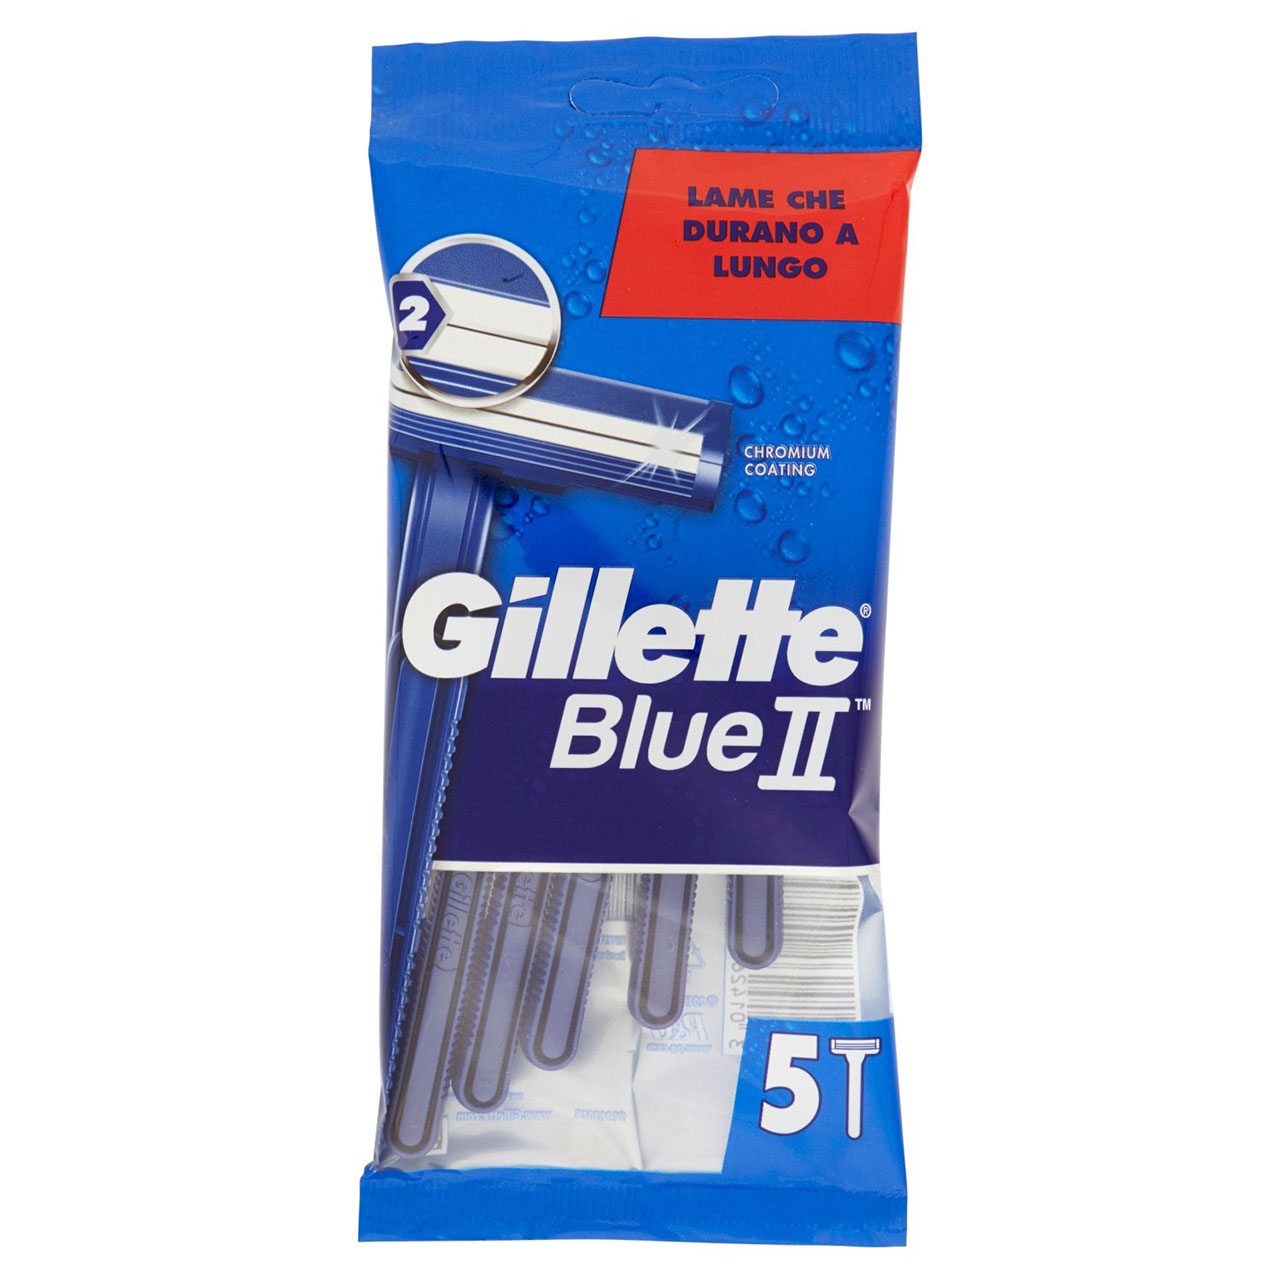 Gillette Blue II Rasoio da Uomo Usa e Getta - 5 rasoi